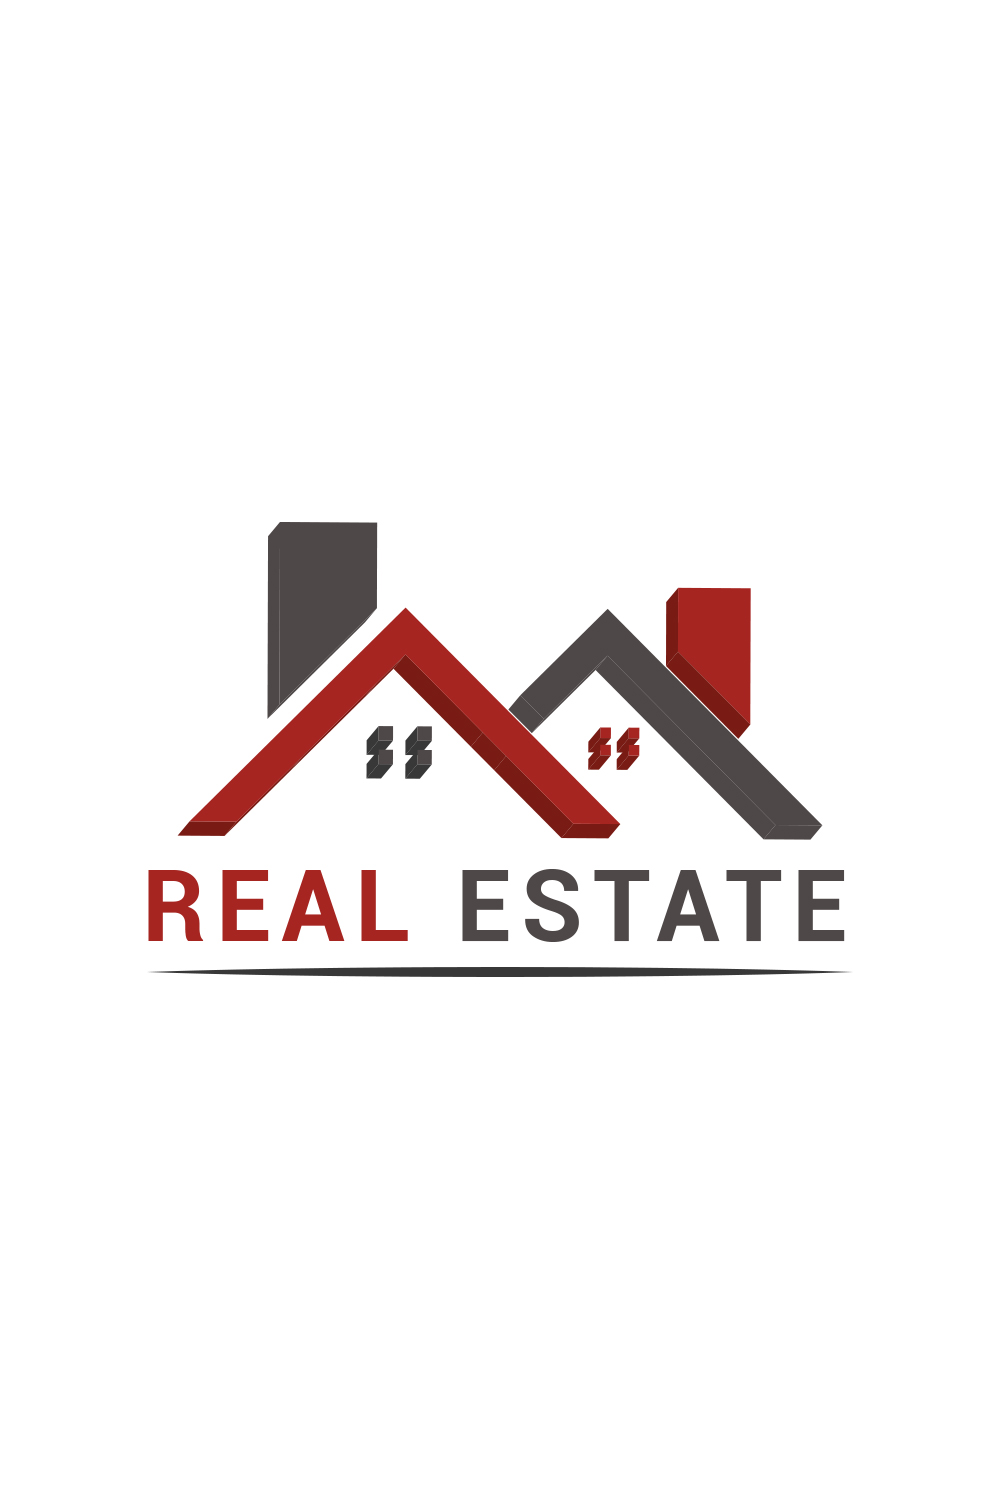 Real estate 3D logo design pinterest preview image.